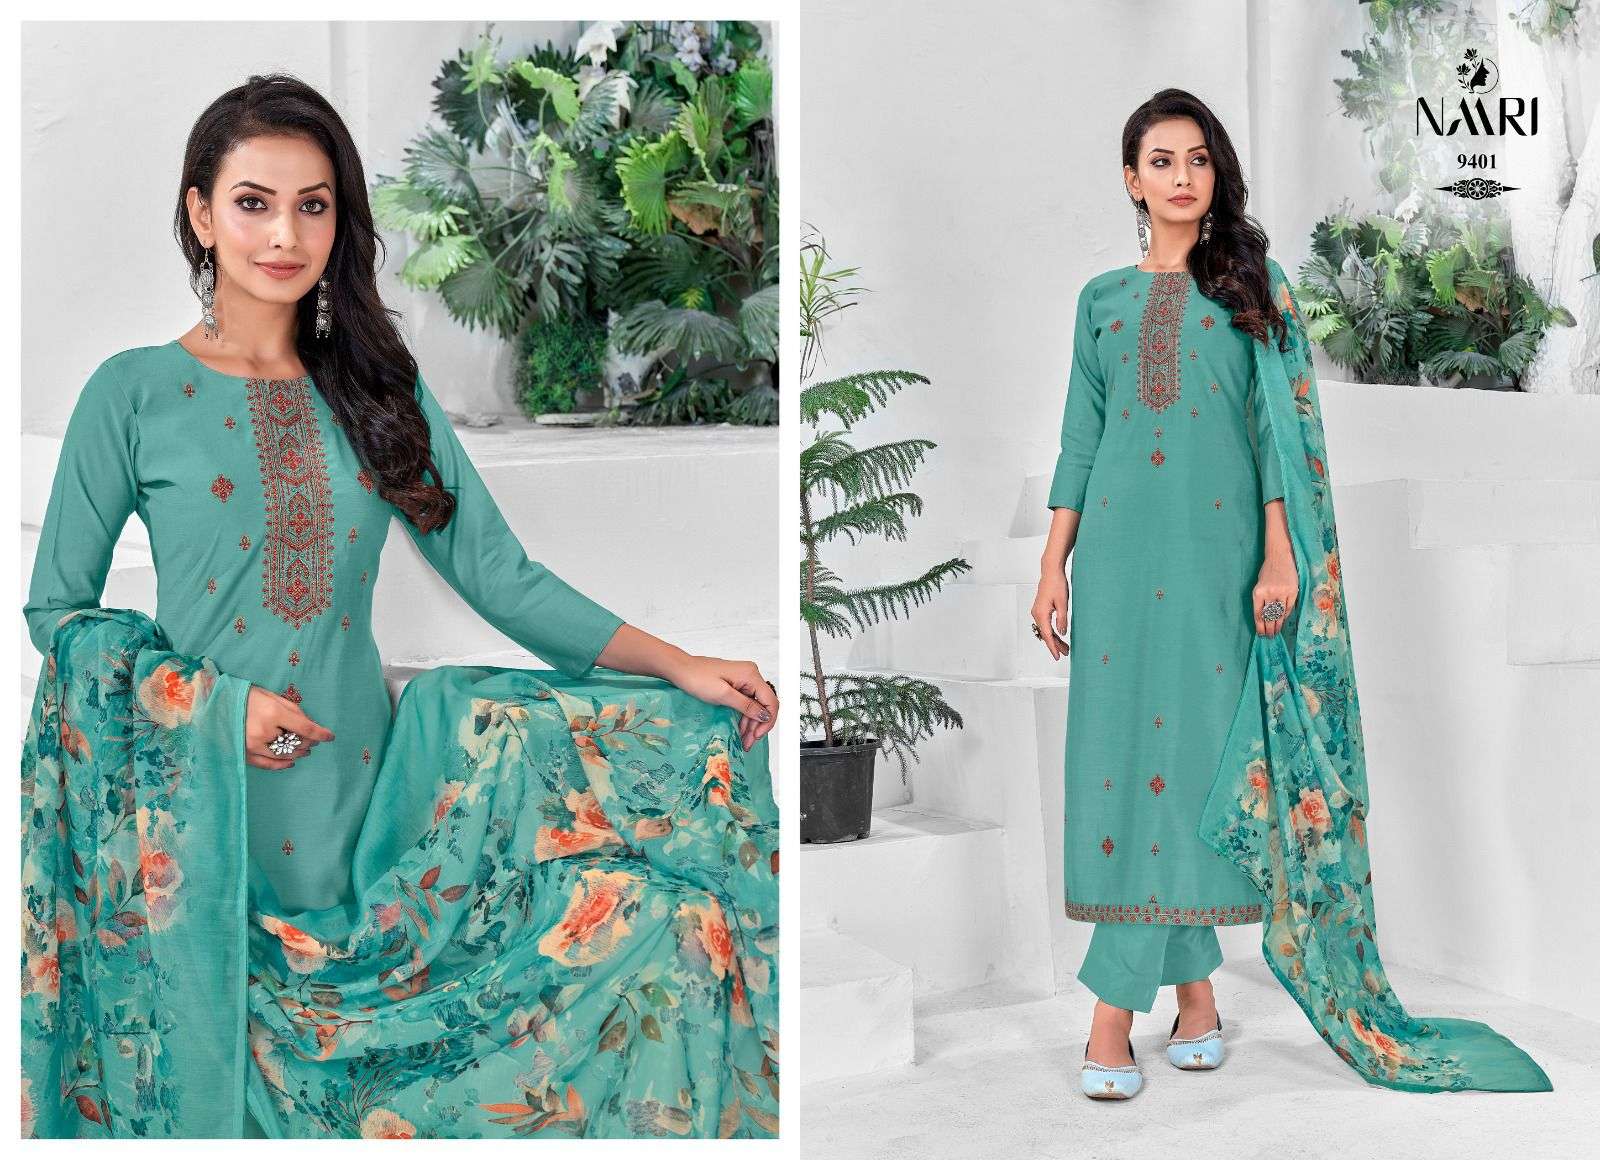 naari inaya 9401-9404 series indian designer salwar kameez catalogue online supplier surat